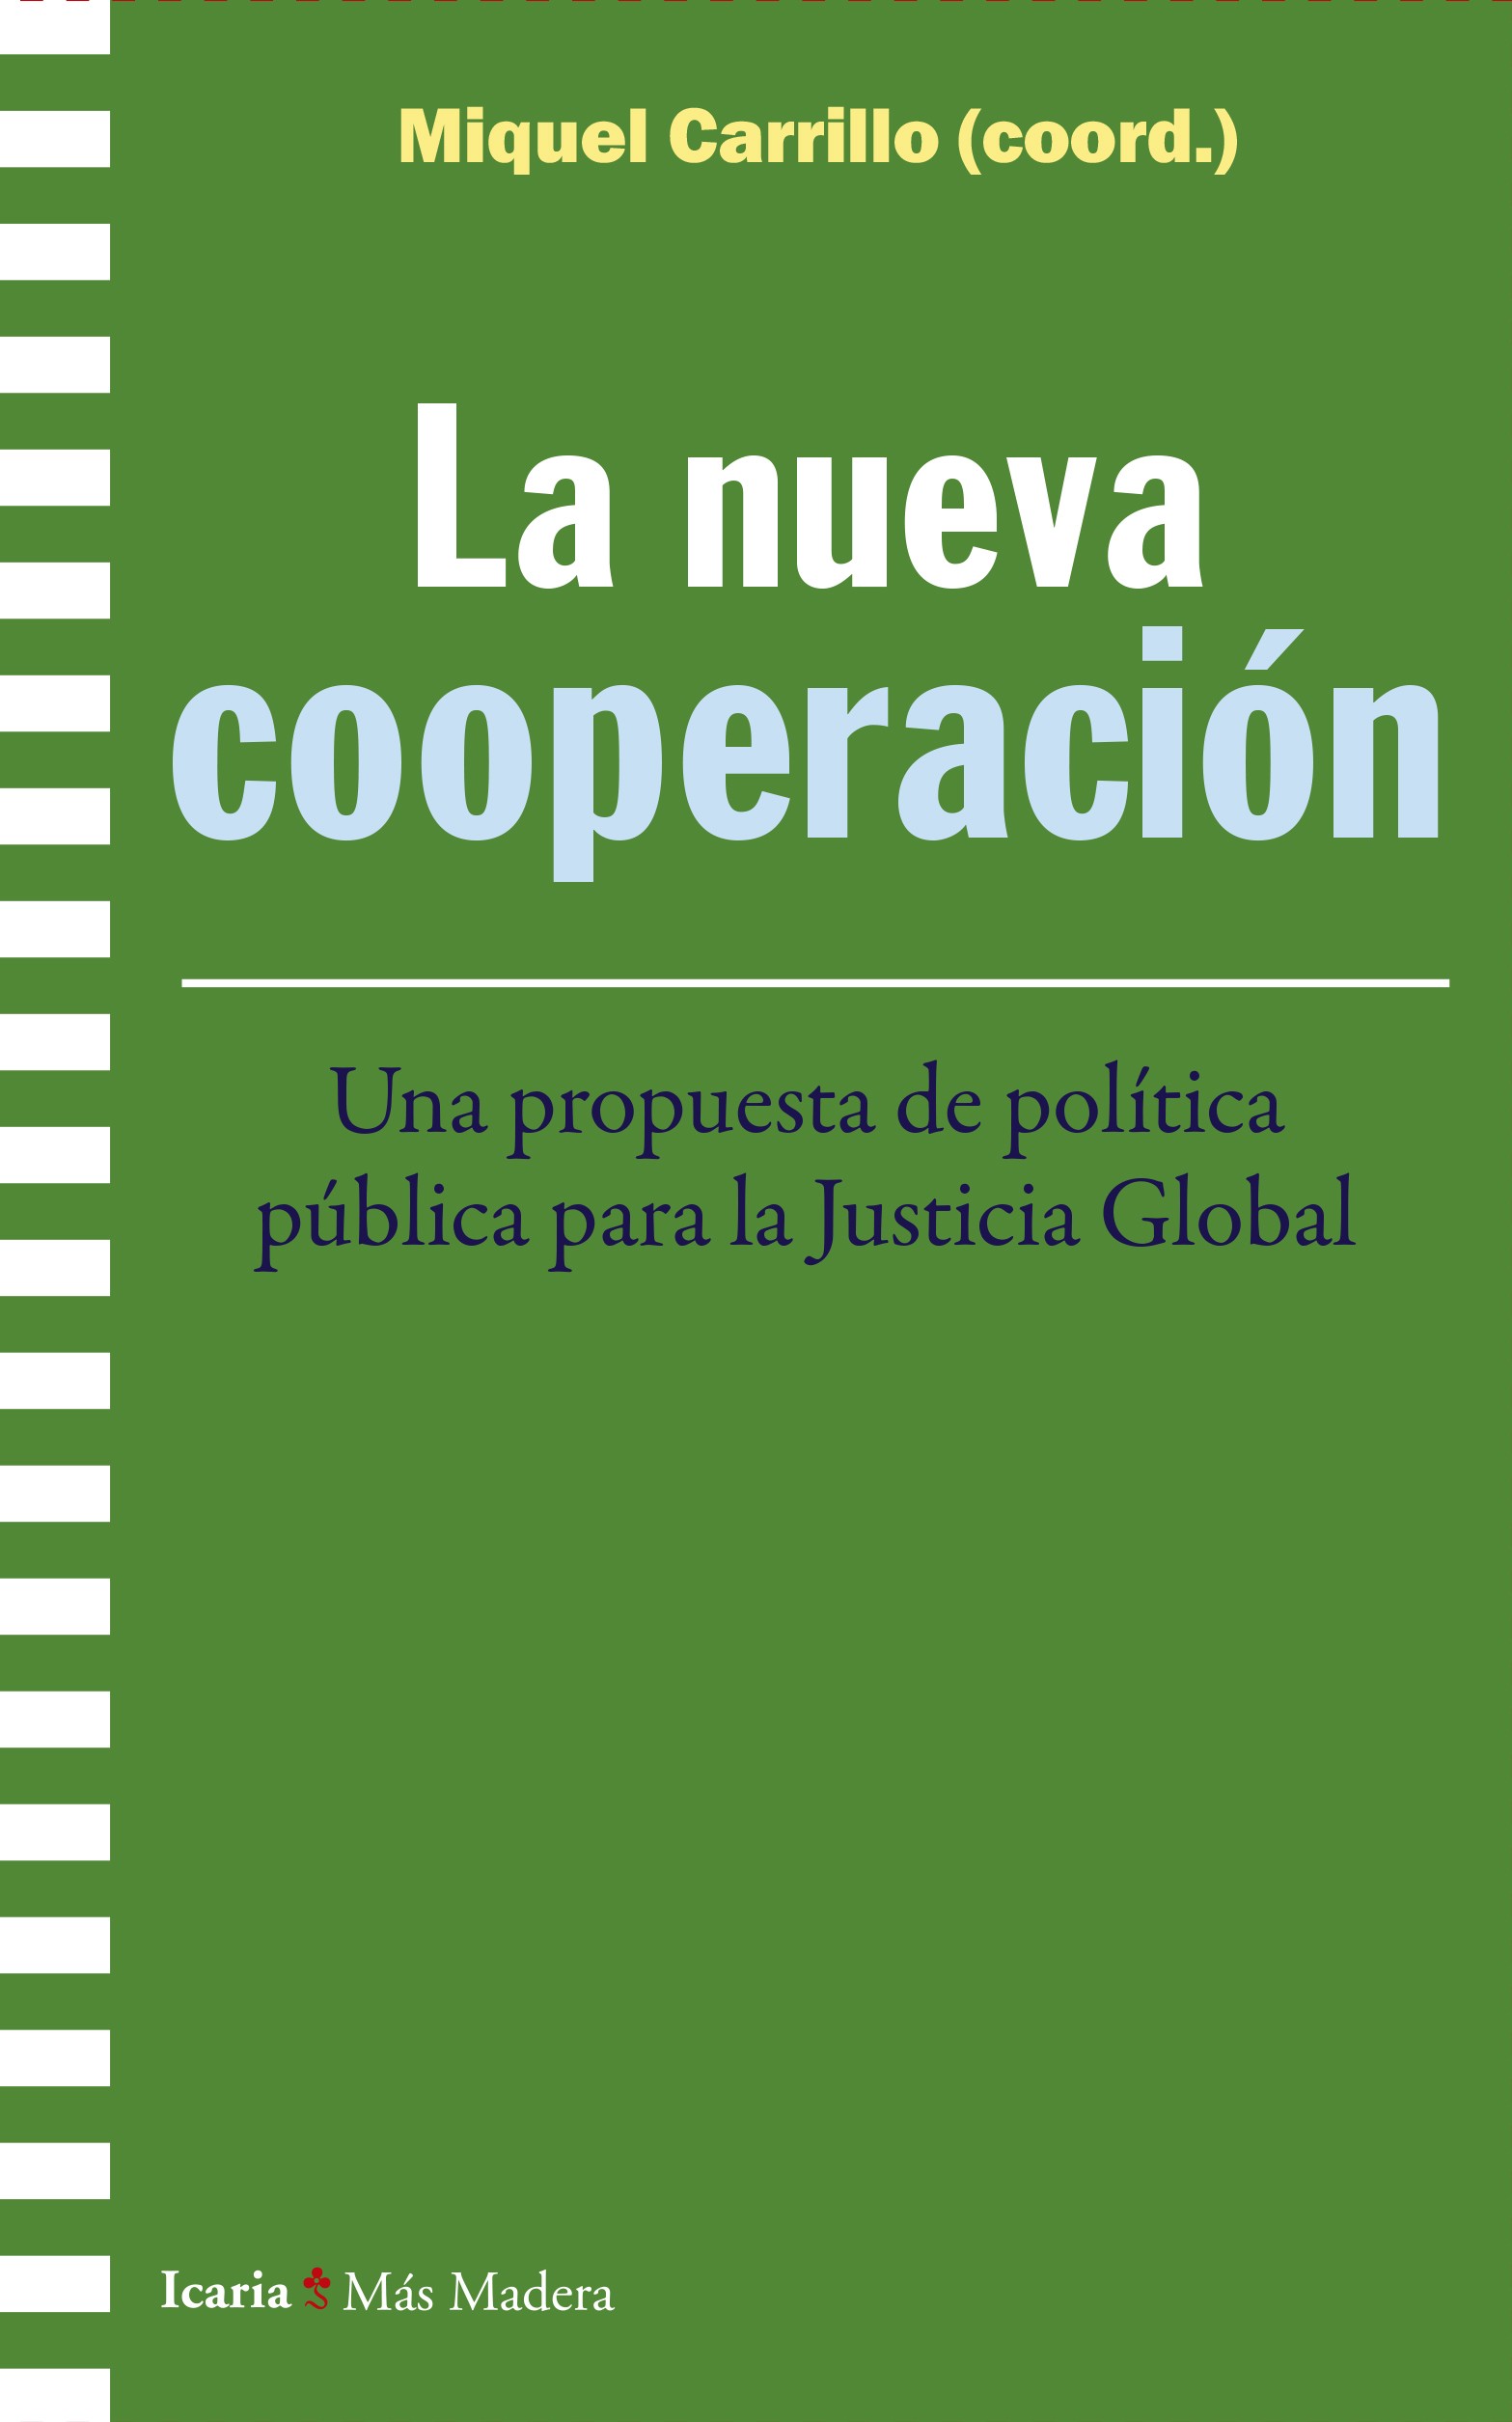 La nueva cooperación. Una propuesta de política pública para Justicia